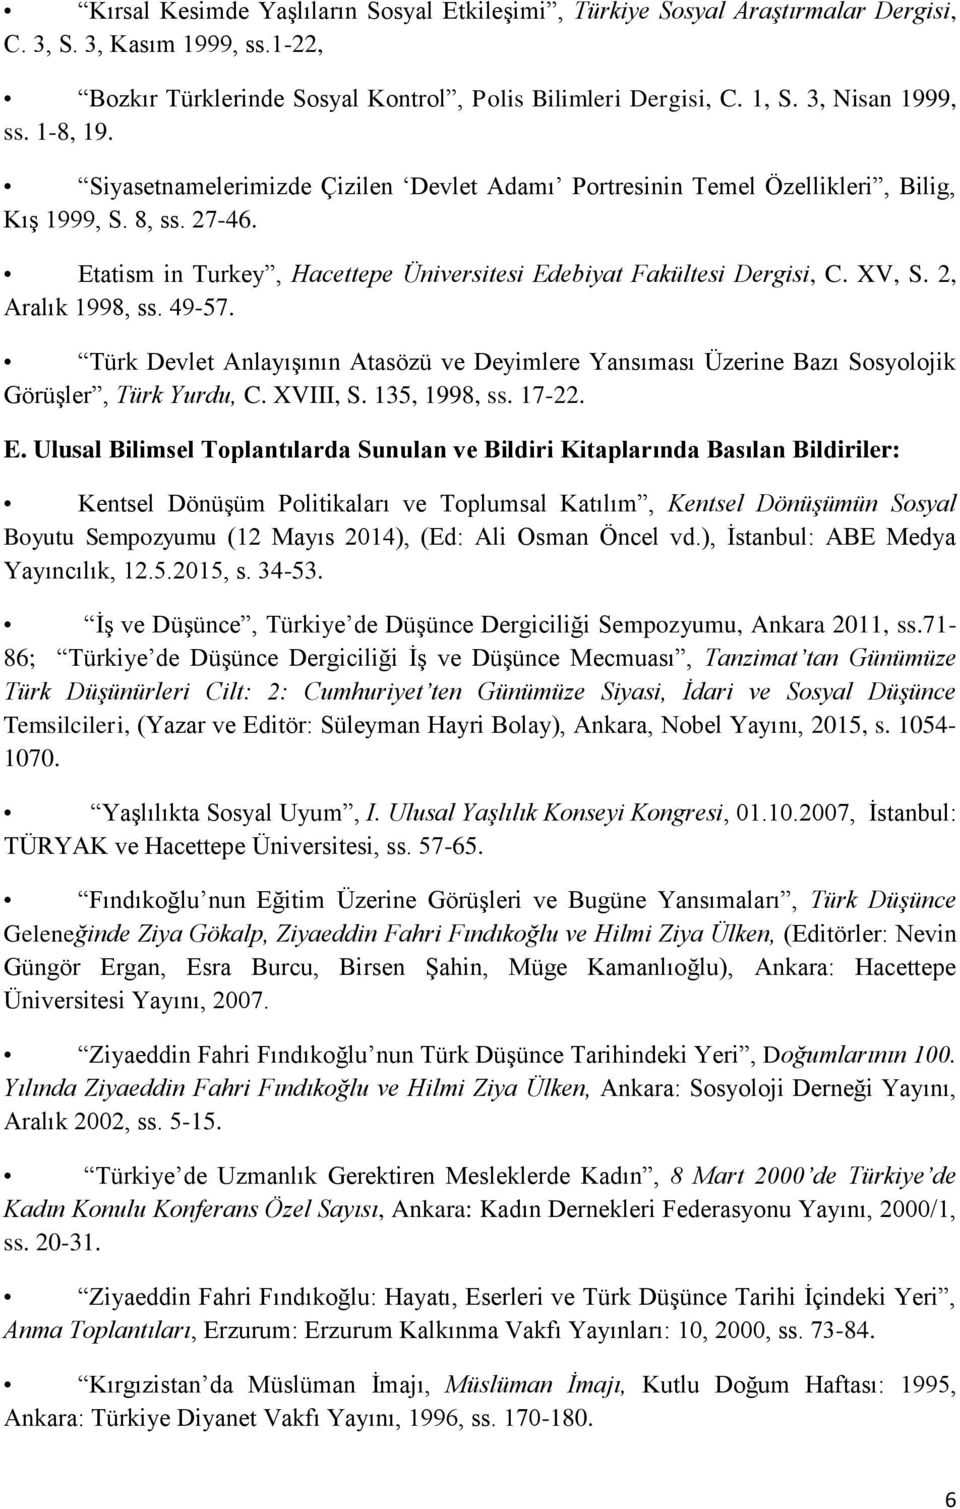 Etatism in Turkey, Hacettepe Üniversitesi Edebiyat Fakültesi Dergisi, C. XV, S. 2, Aralık 1998, ss. 49-57.